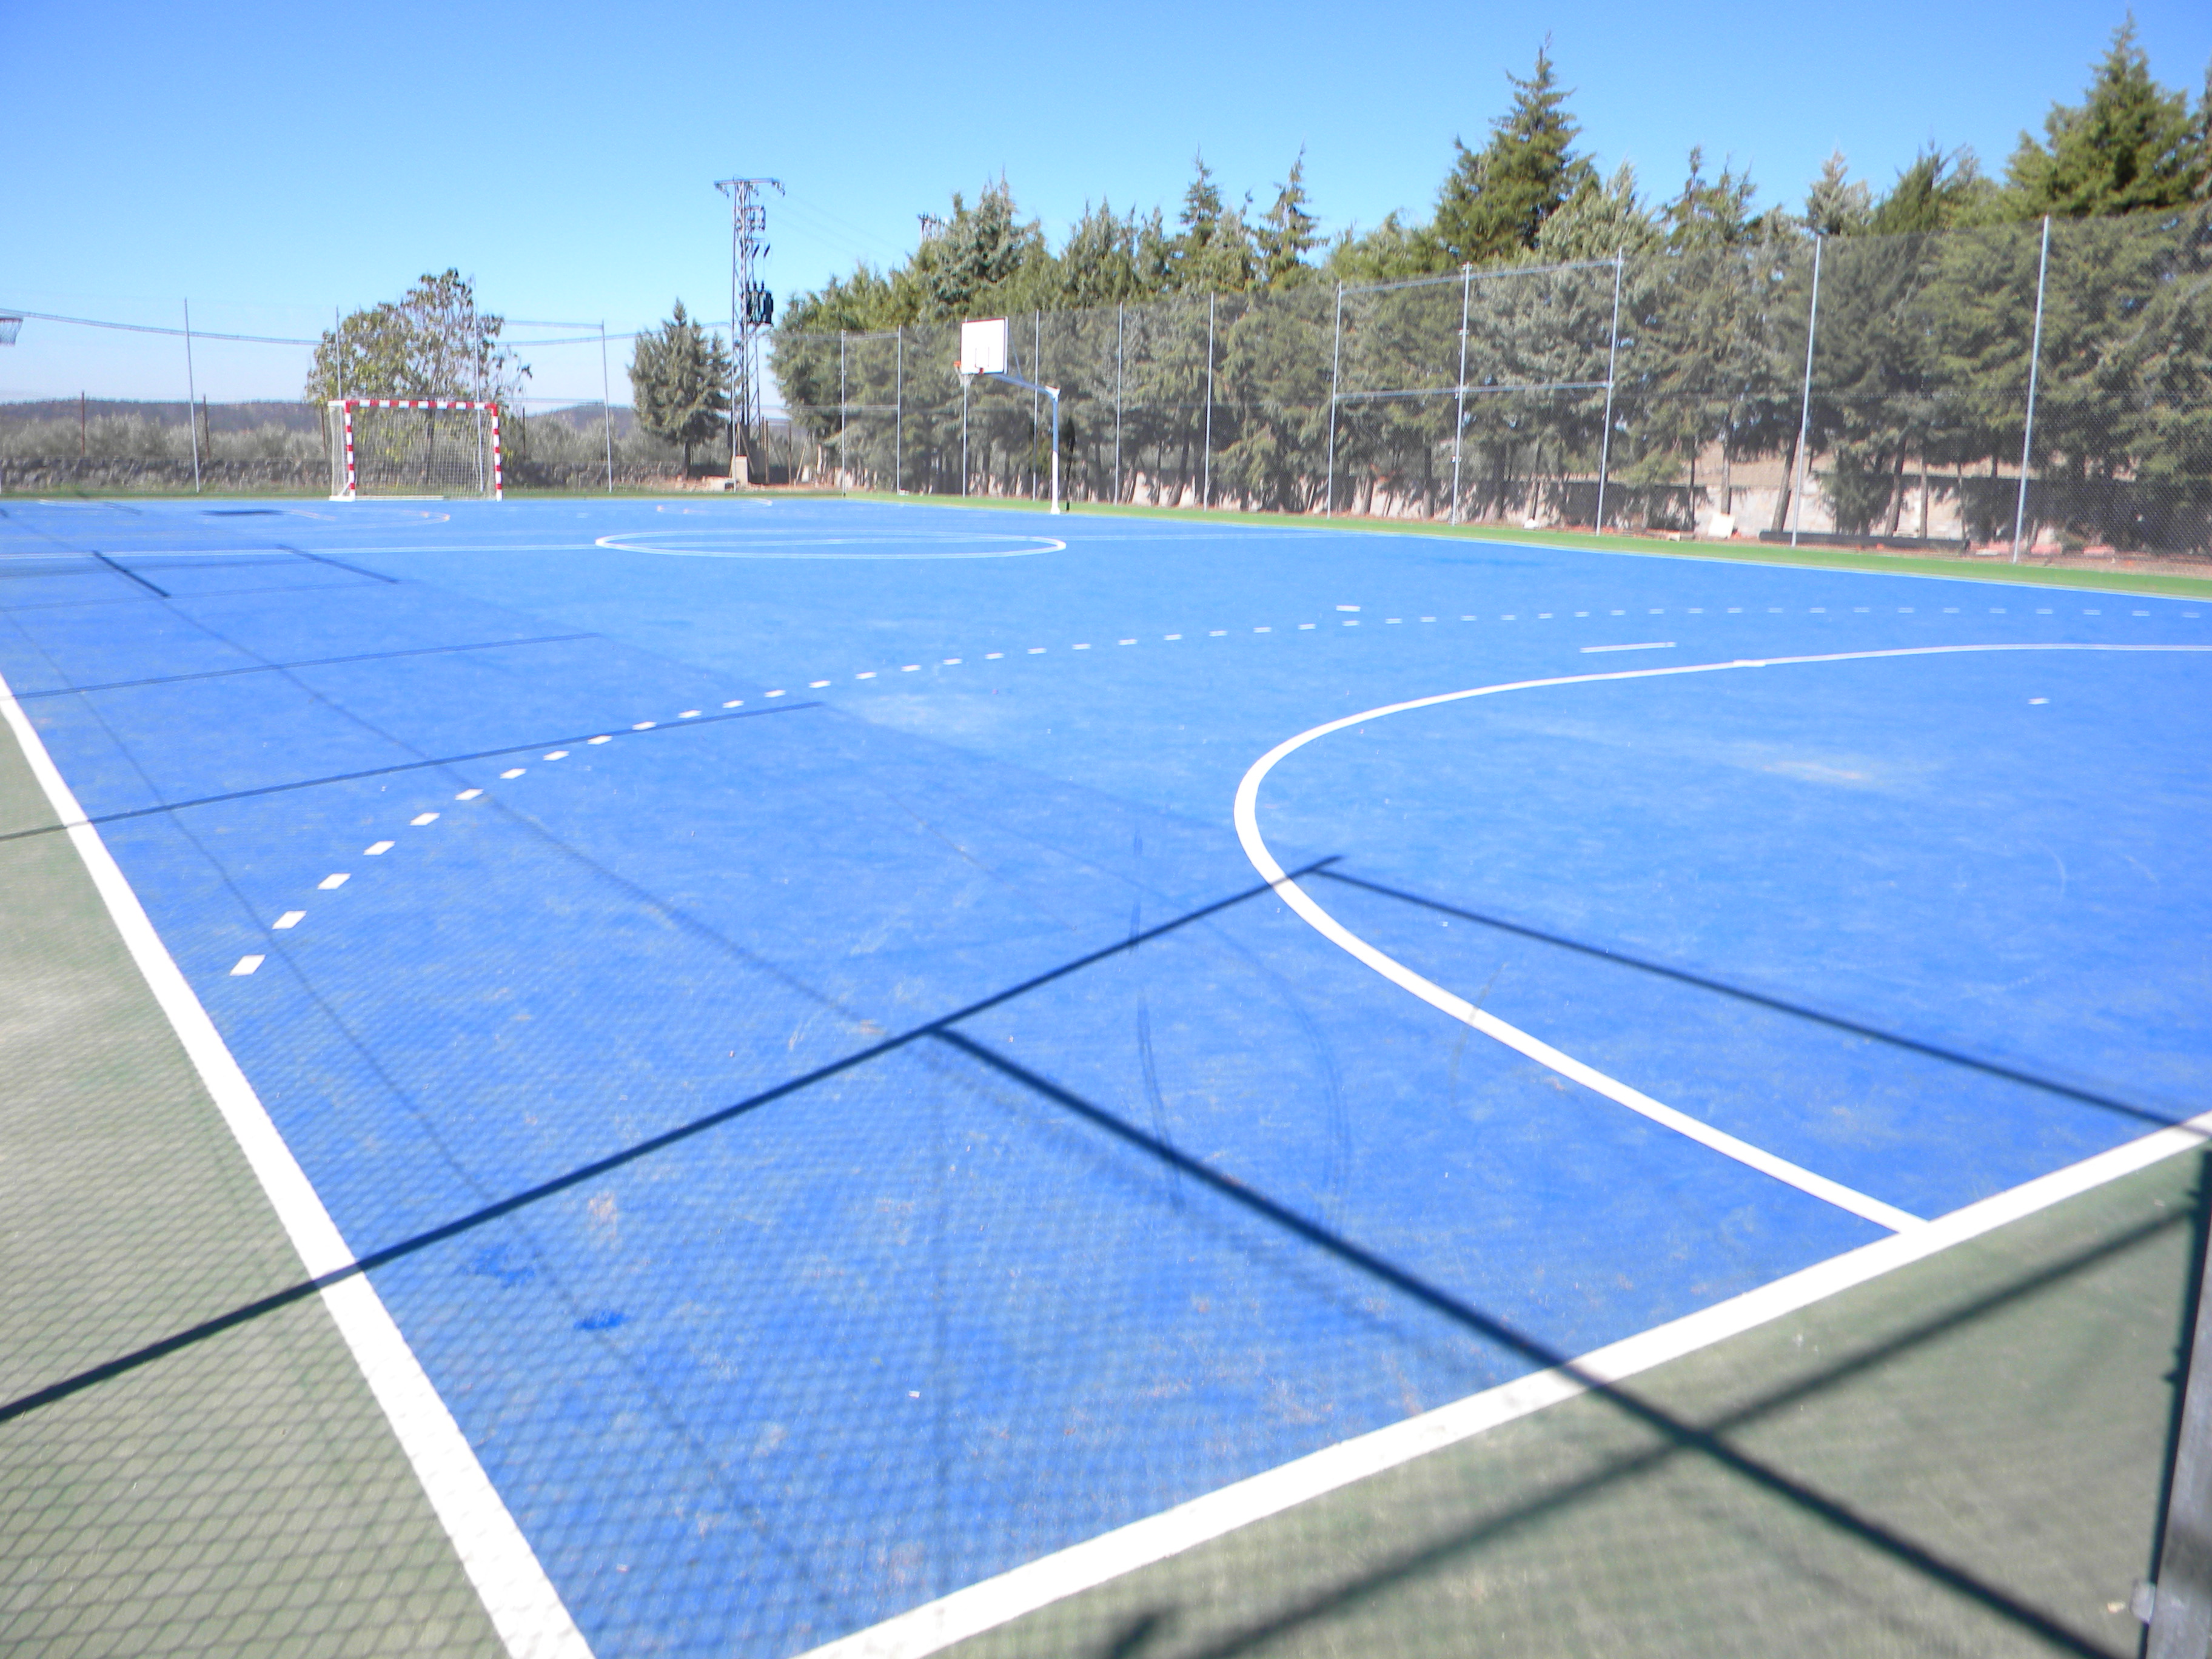 Las pistas polideportivas del campo de fútbol, satisfacen la demanda de instalaciones en la localidad.